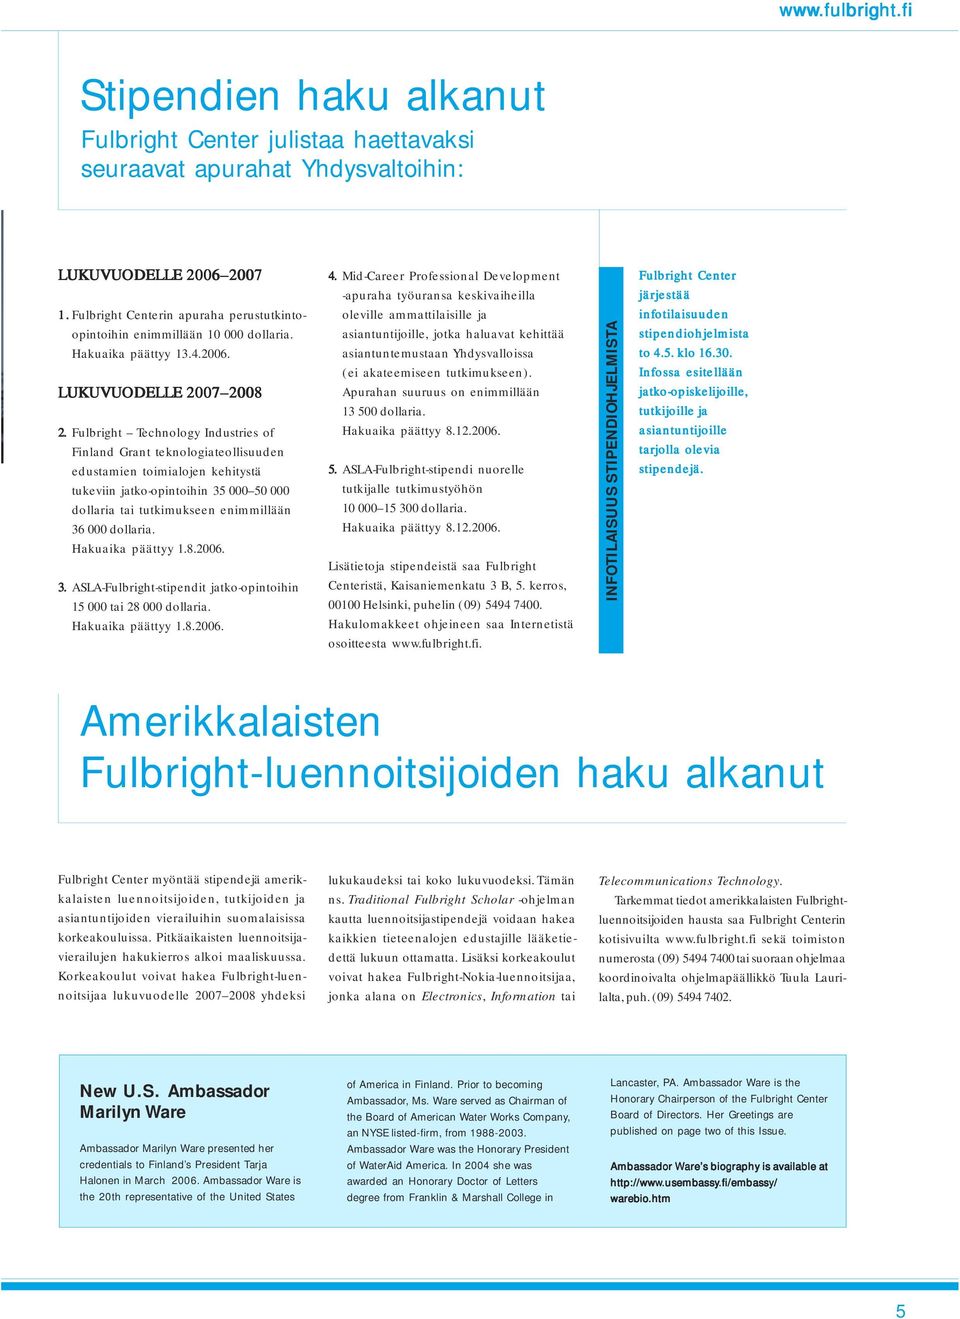 Fulbright Technology Industries of Finland Grant teknologiateollisuuden edustamien toimialojen kehitystä tukeviin jatko-opintoihin 35 000 50 000 dollaria tai tutkimukseen enimmillään 36 000 dollaria.